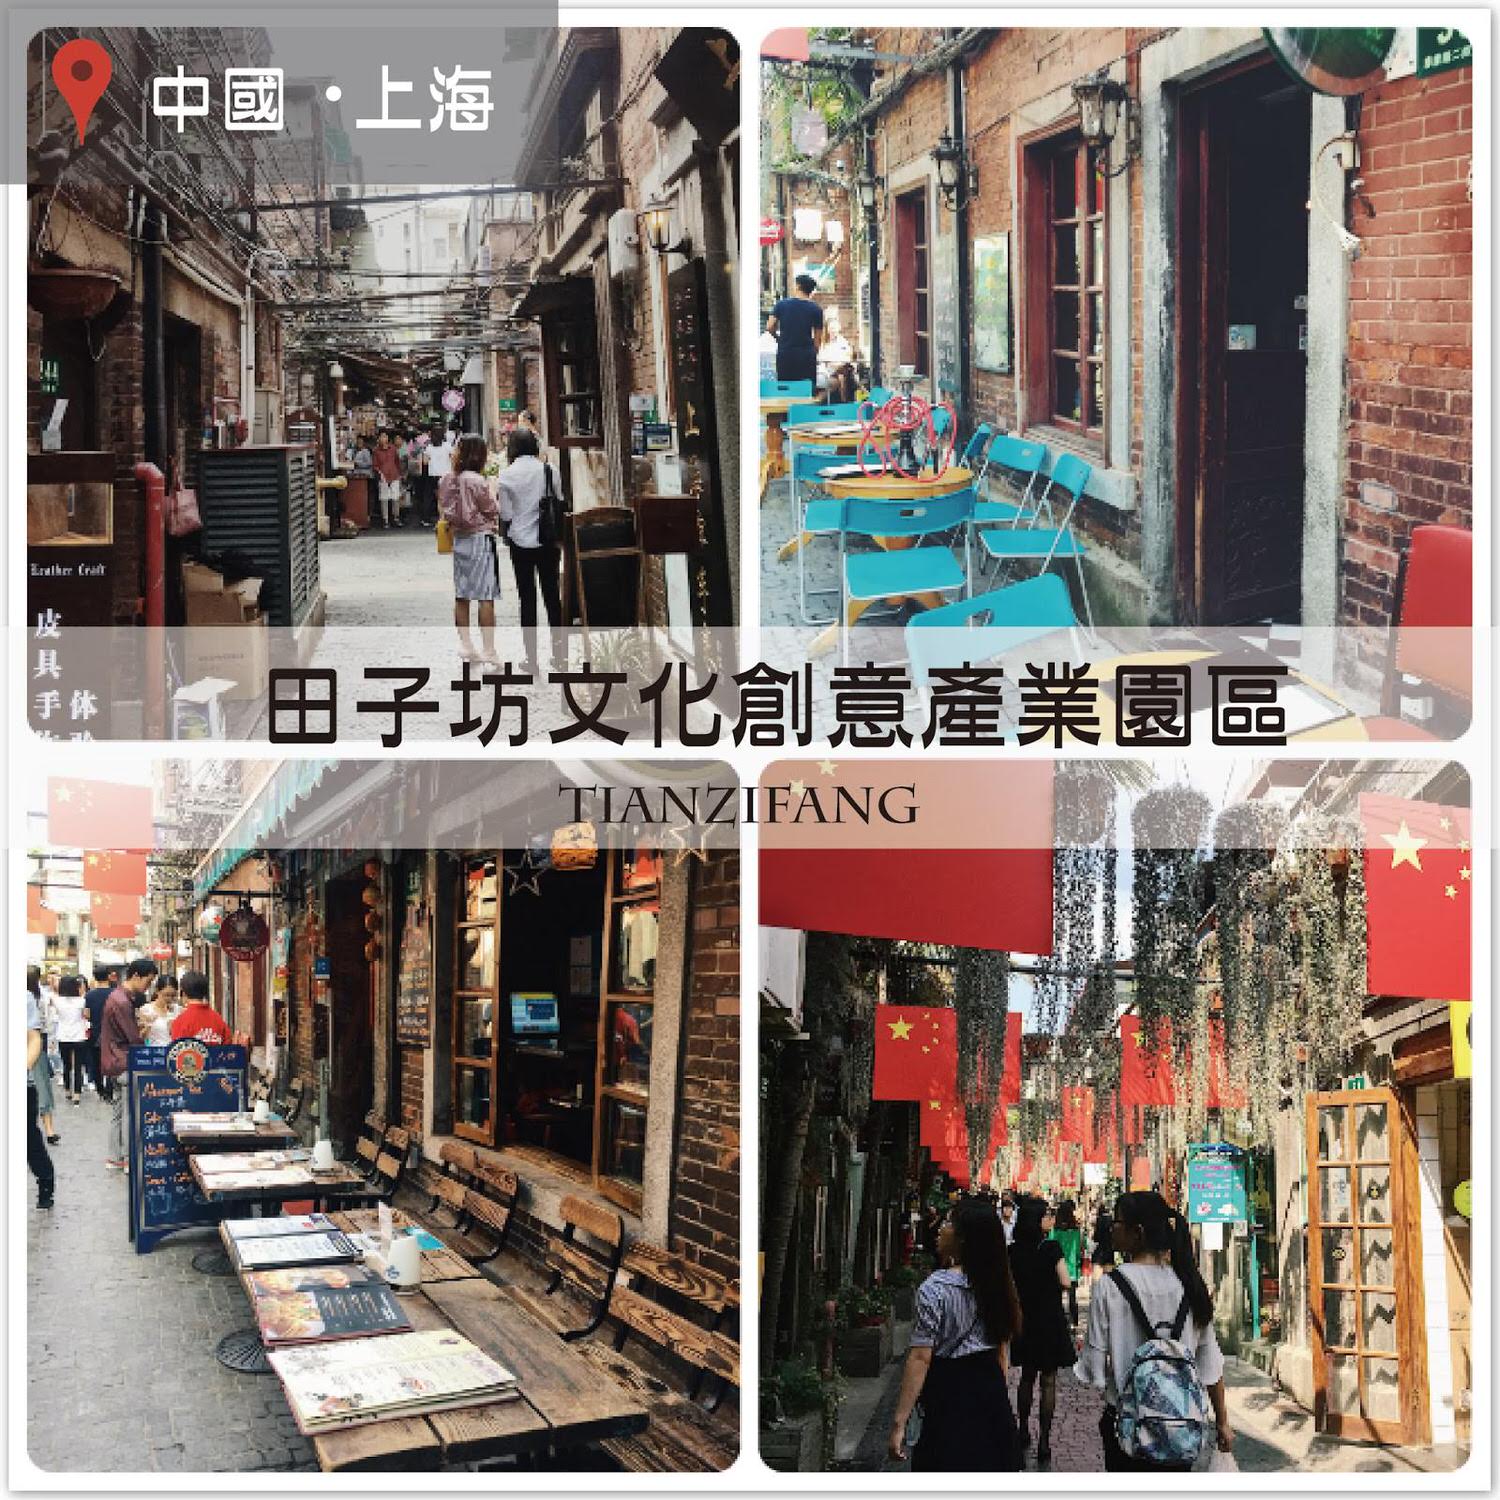 【上海自由行】田子坊文創園區，巷弄裡的藝術文創聚落！交通方式/逛街路線 @莓姬貝利・食事旅行